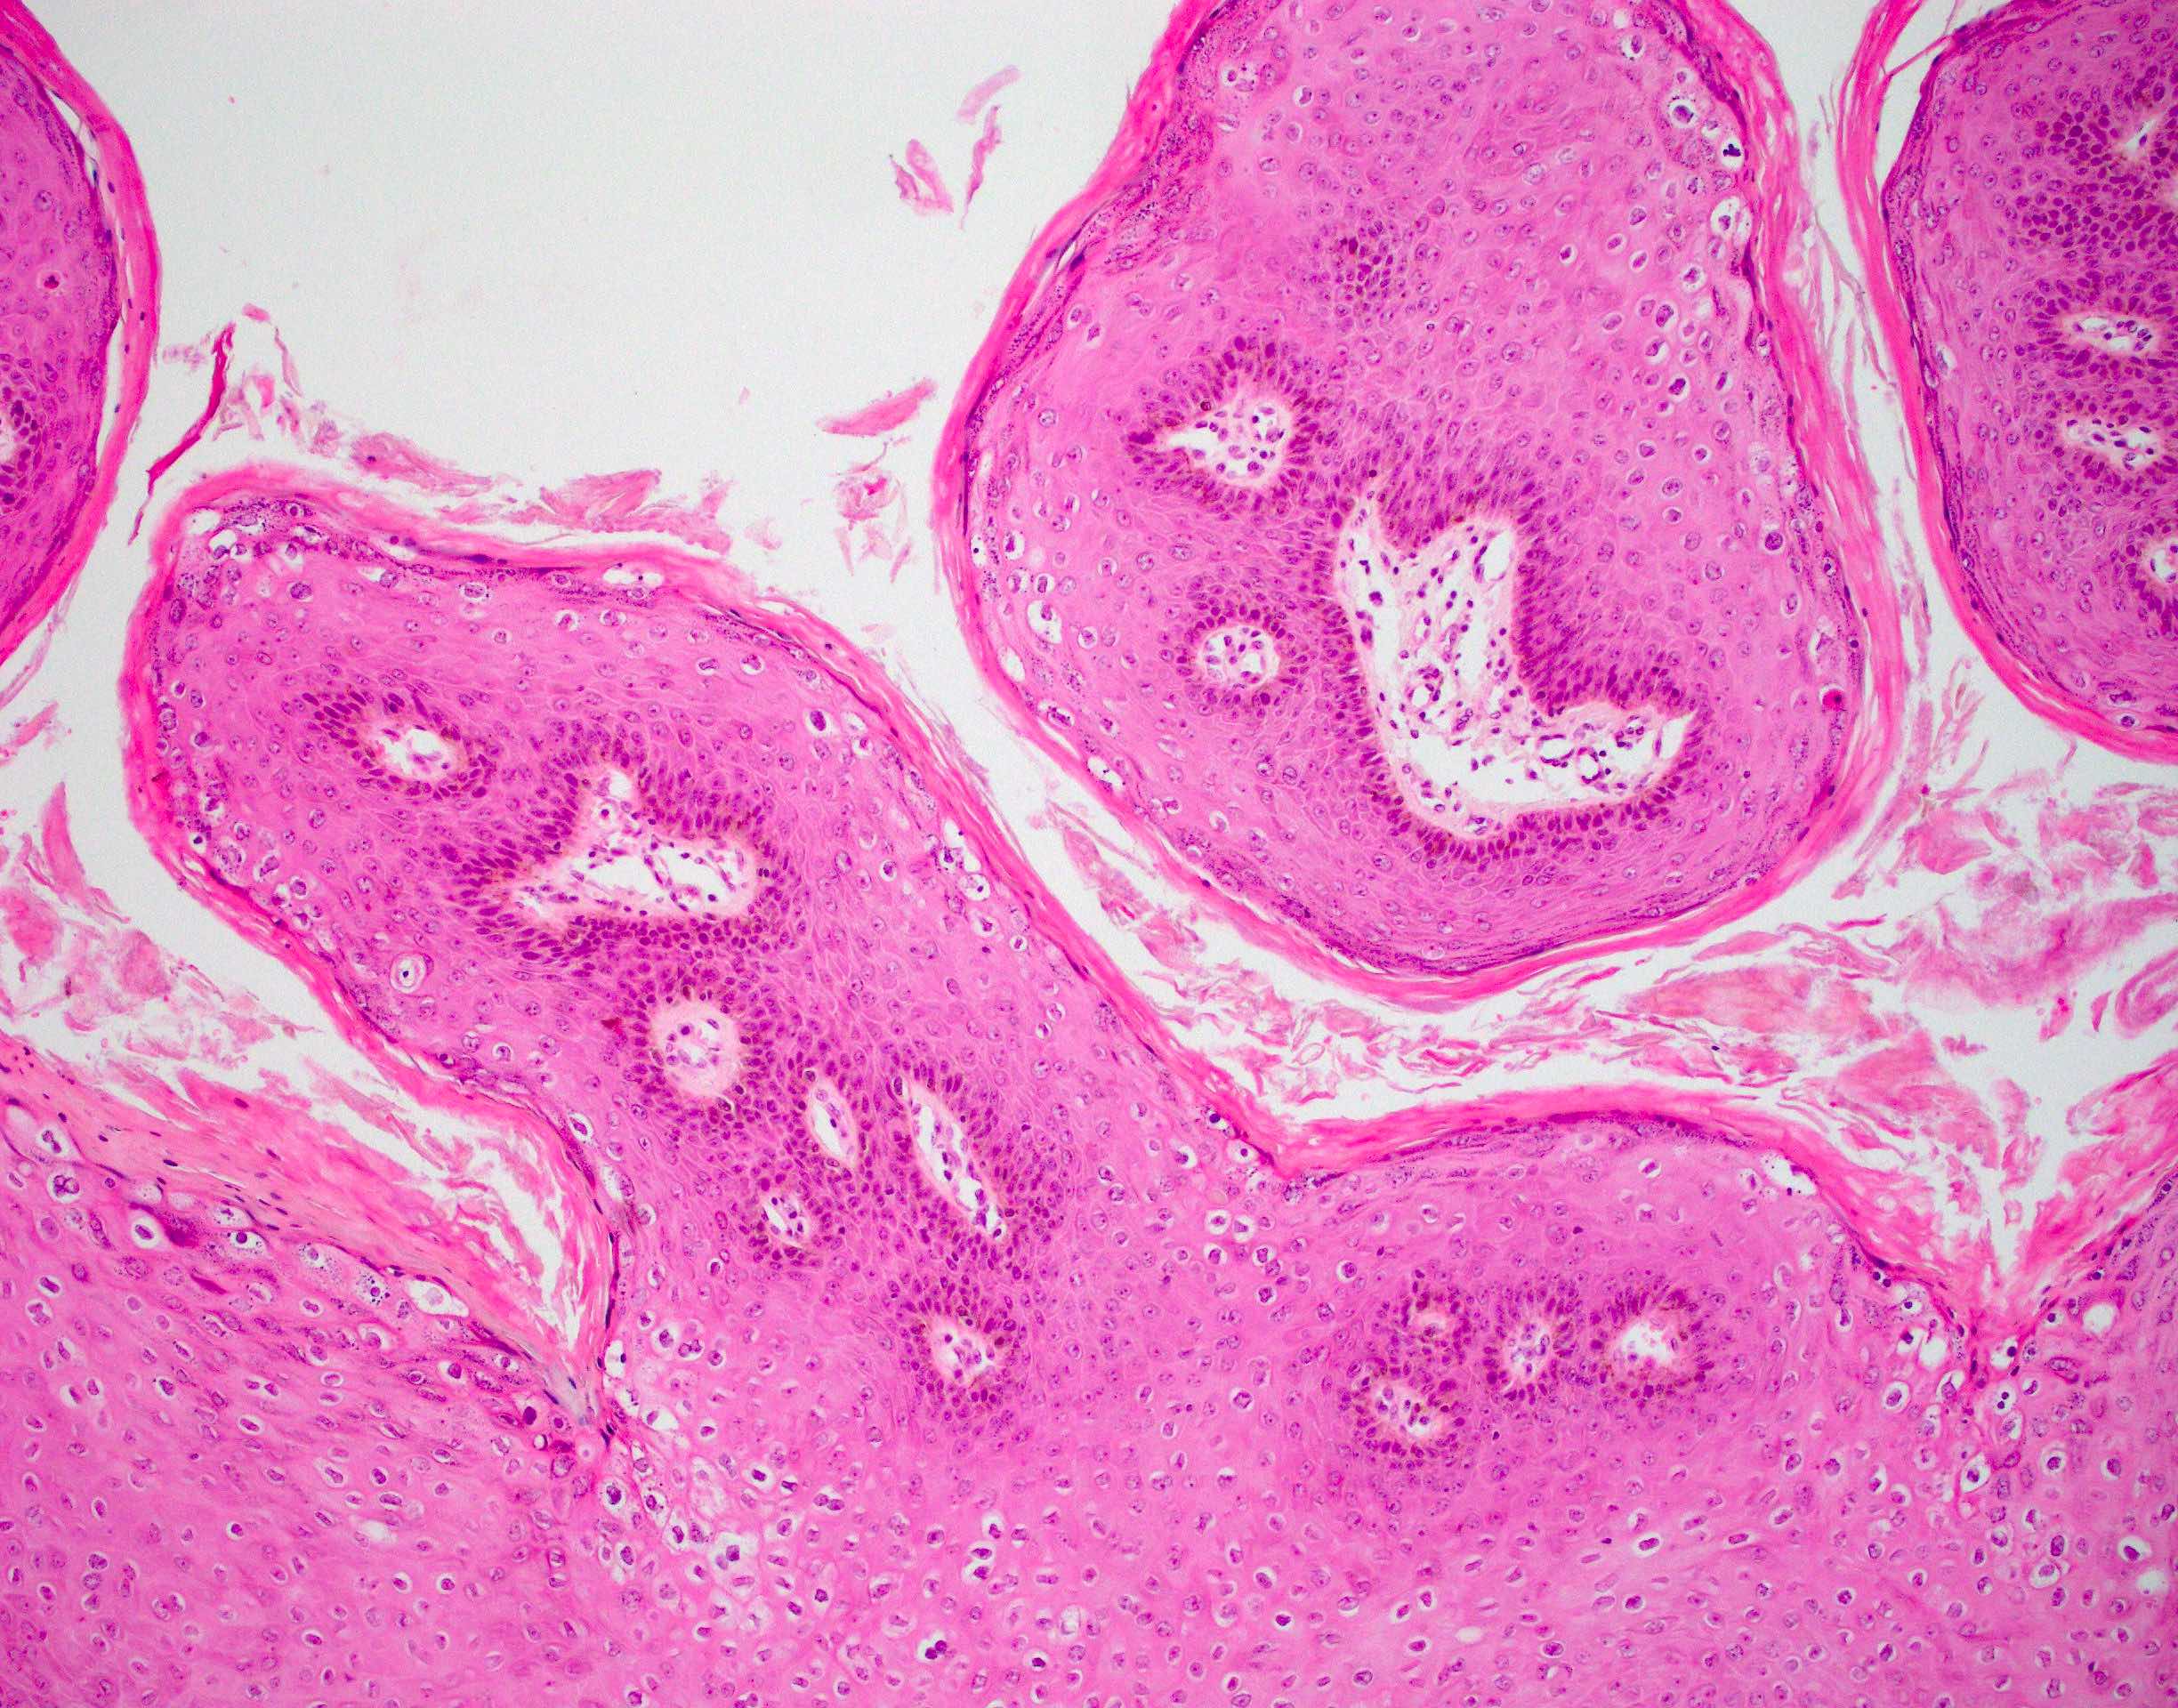 Papillary squamous proliferation, parakeratosis and koilocytosis